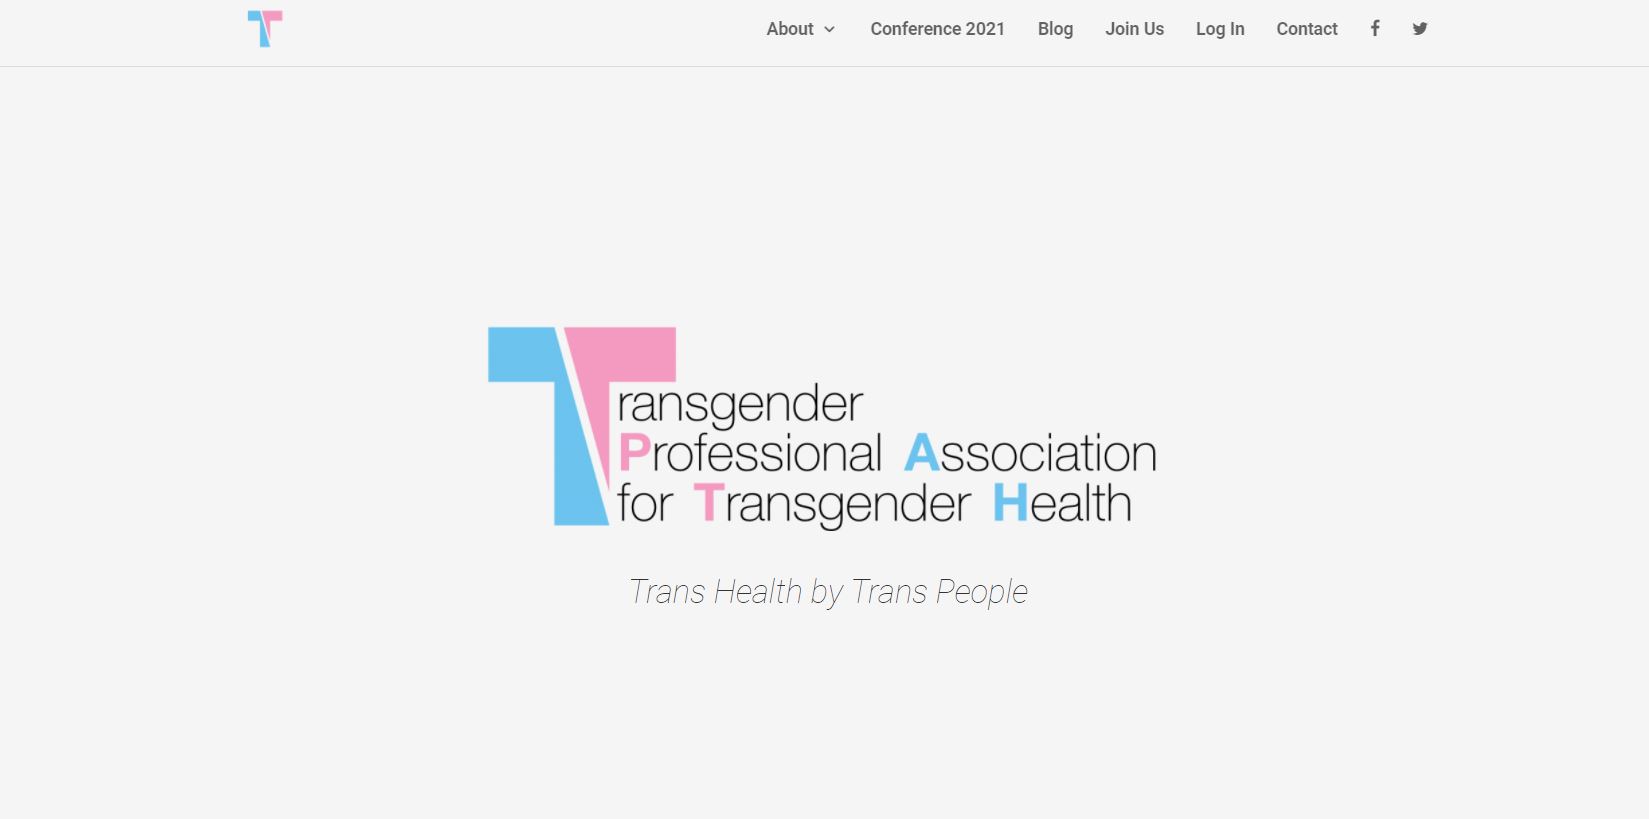 Transgender Professional Association for Transgender Health